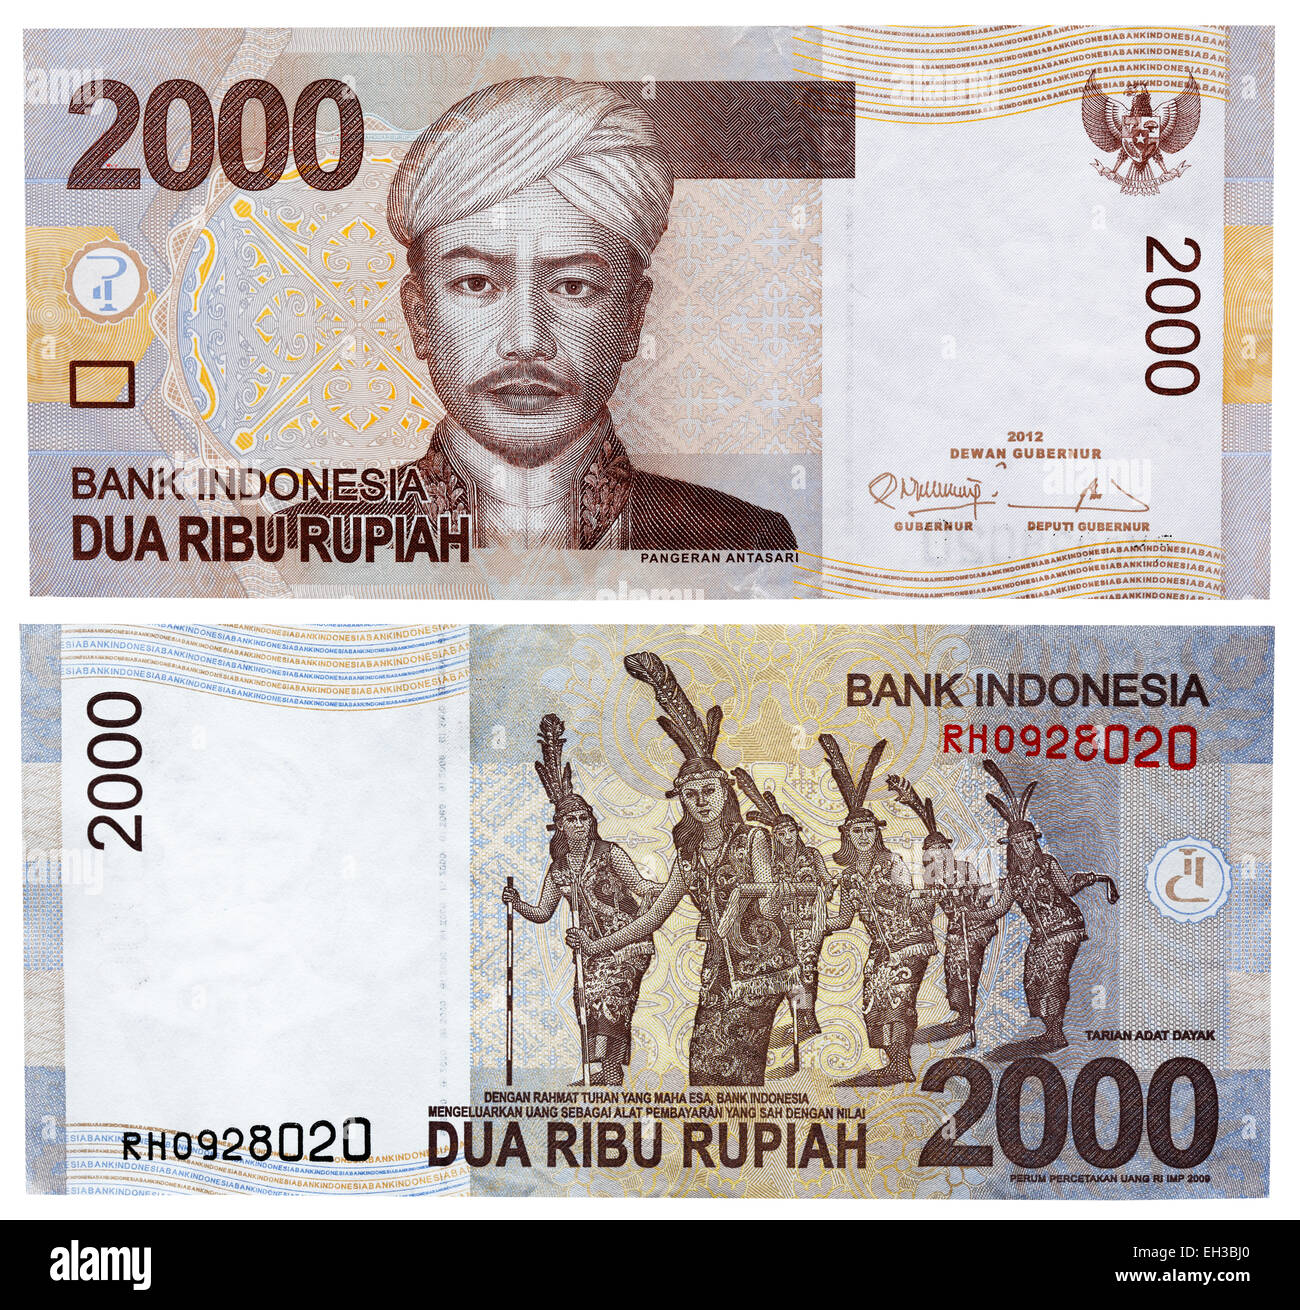 2000 rupiah banknote, Pangeran Antasari, Indonesia, 2012 Stock Photo